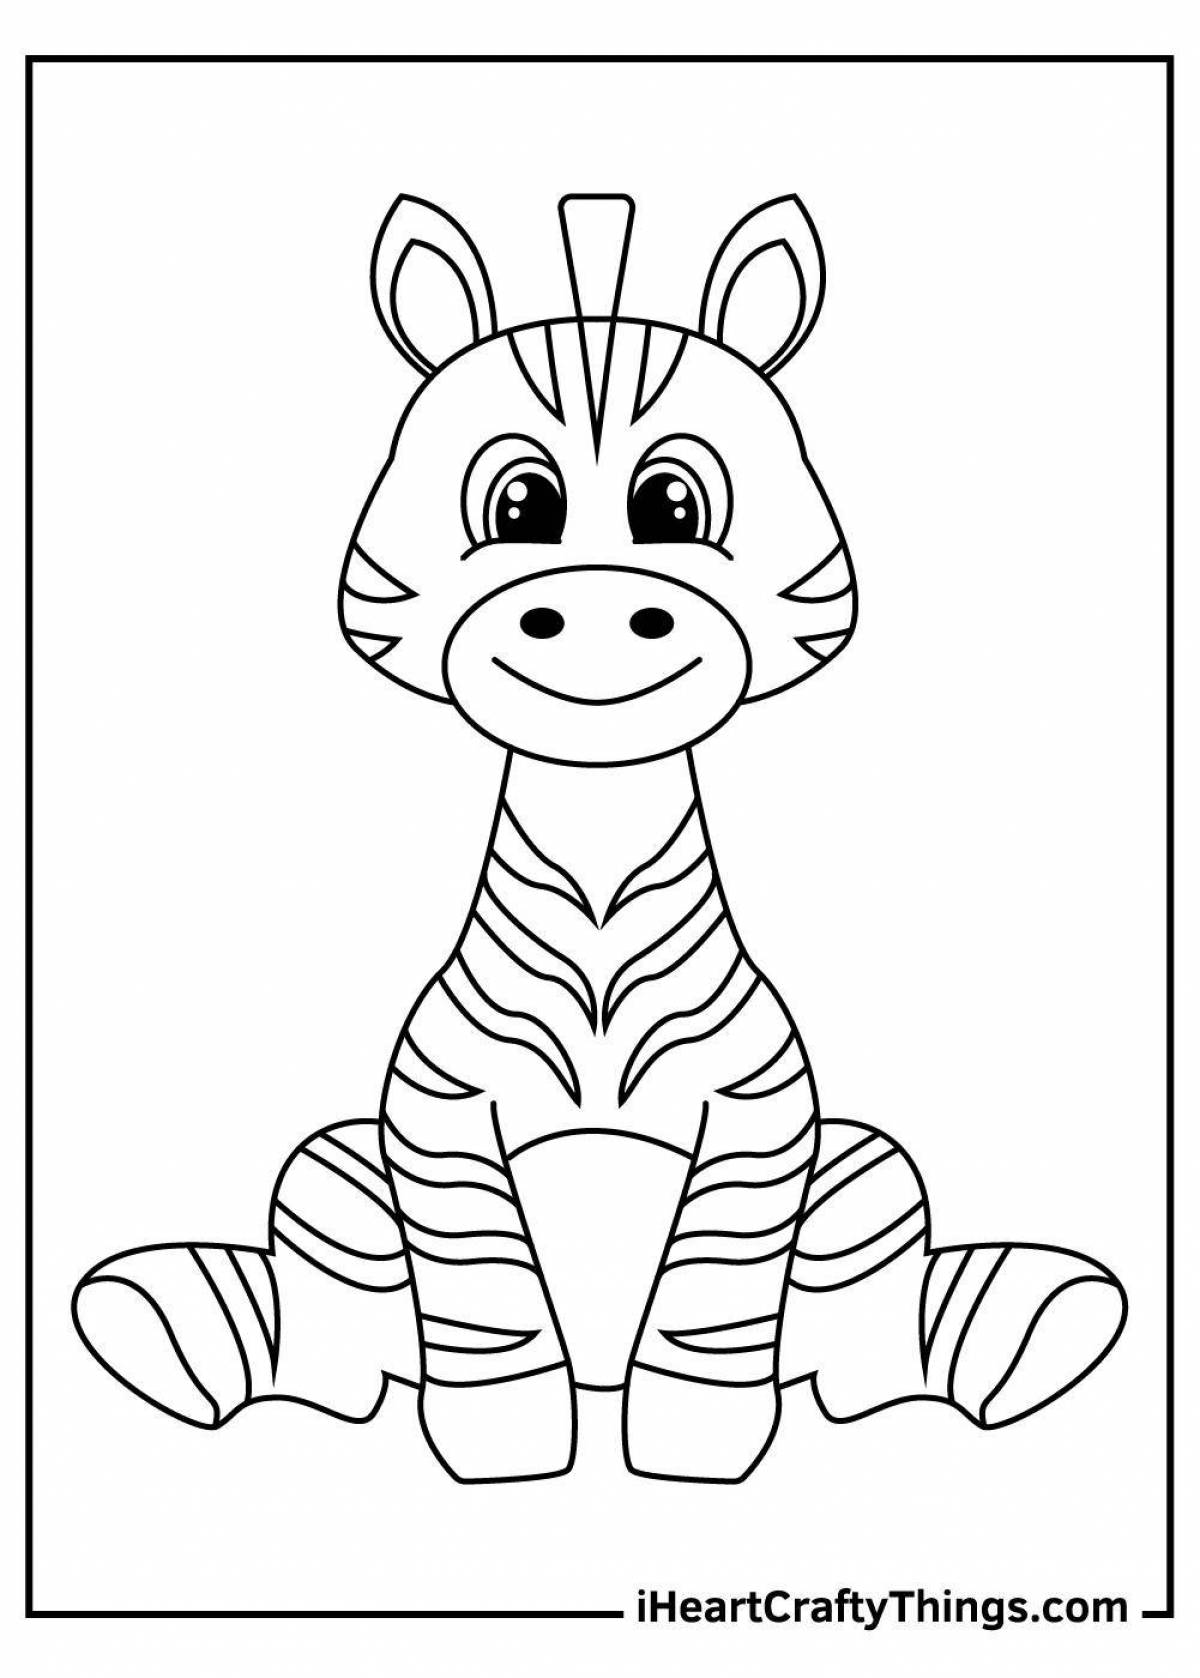 Невероятная раскраска зебра для детей 3-4 лет